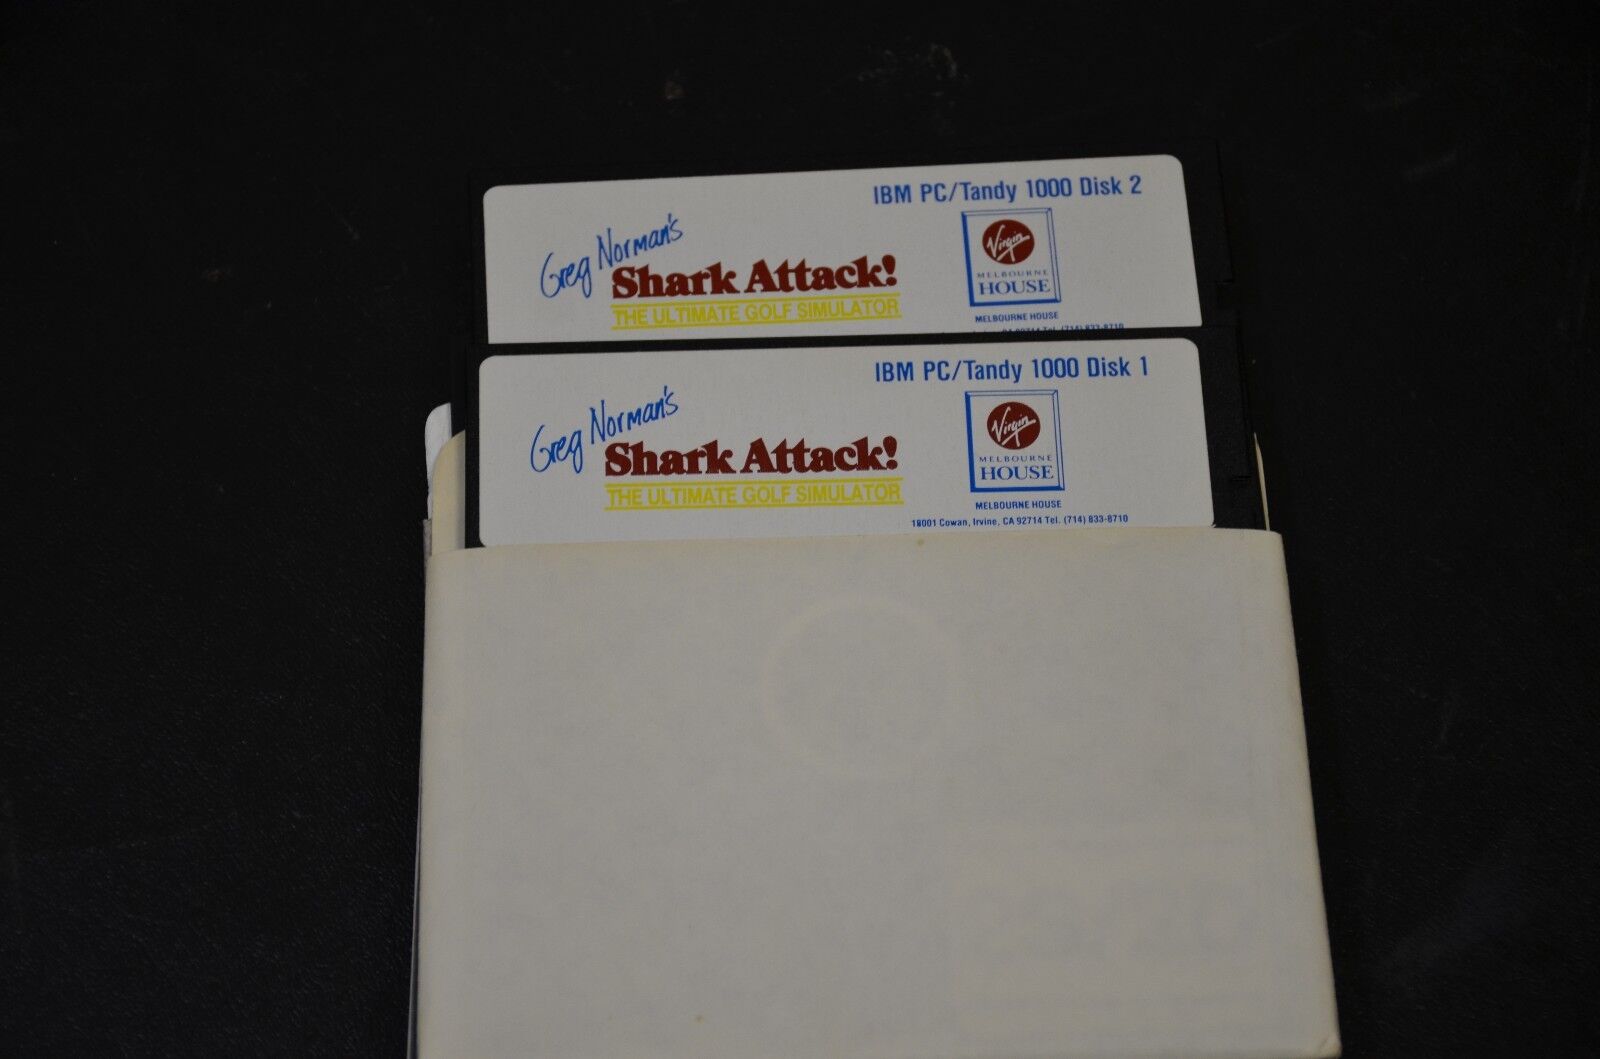 Greg Norman\'s Shark Attack - 5.25 Media